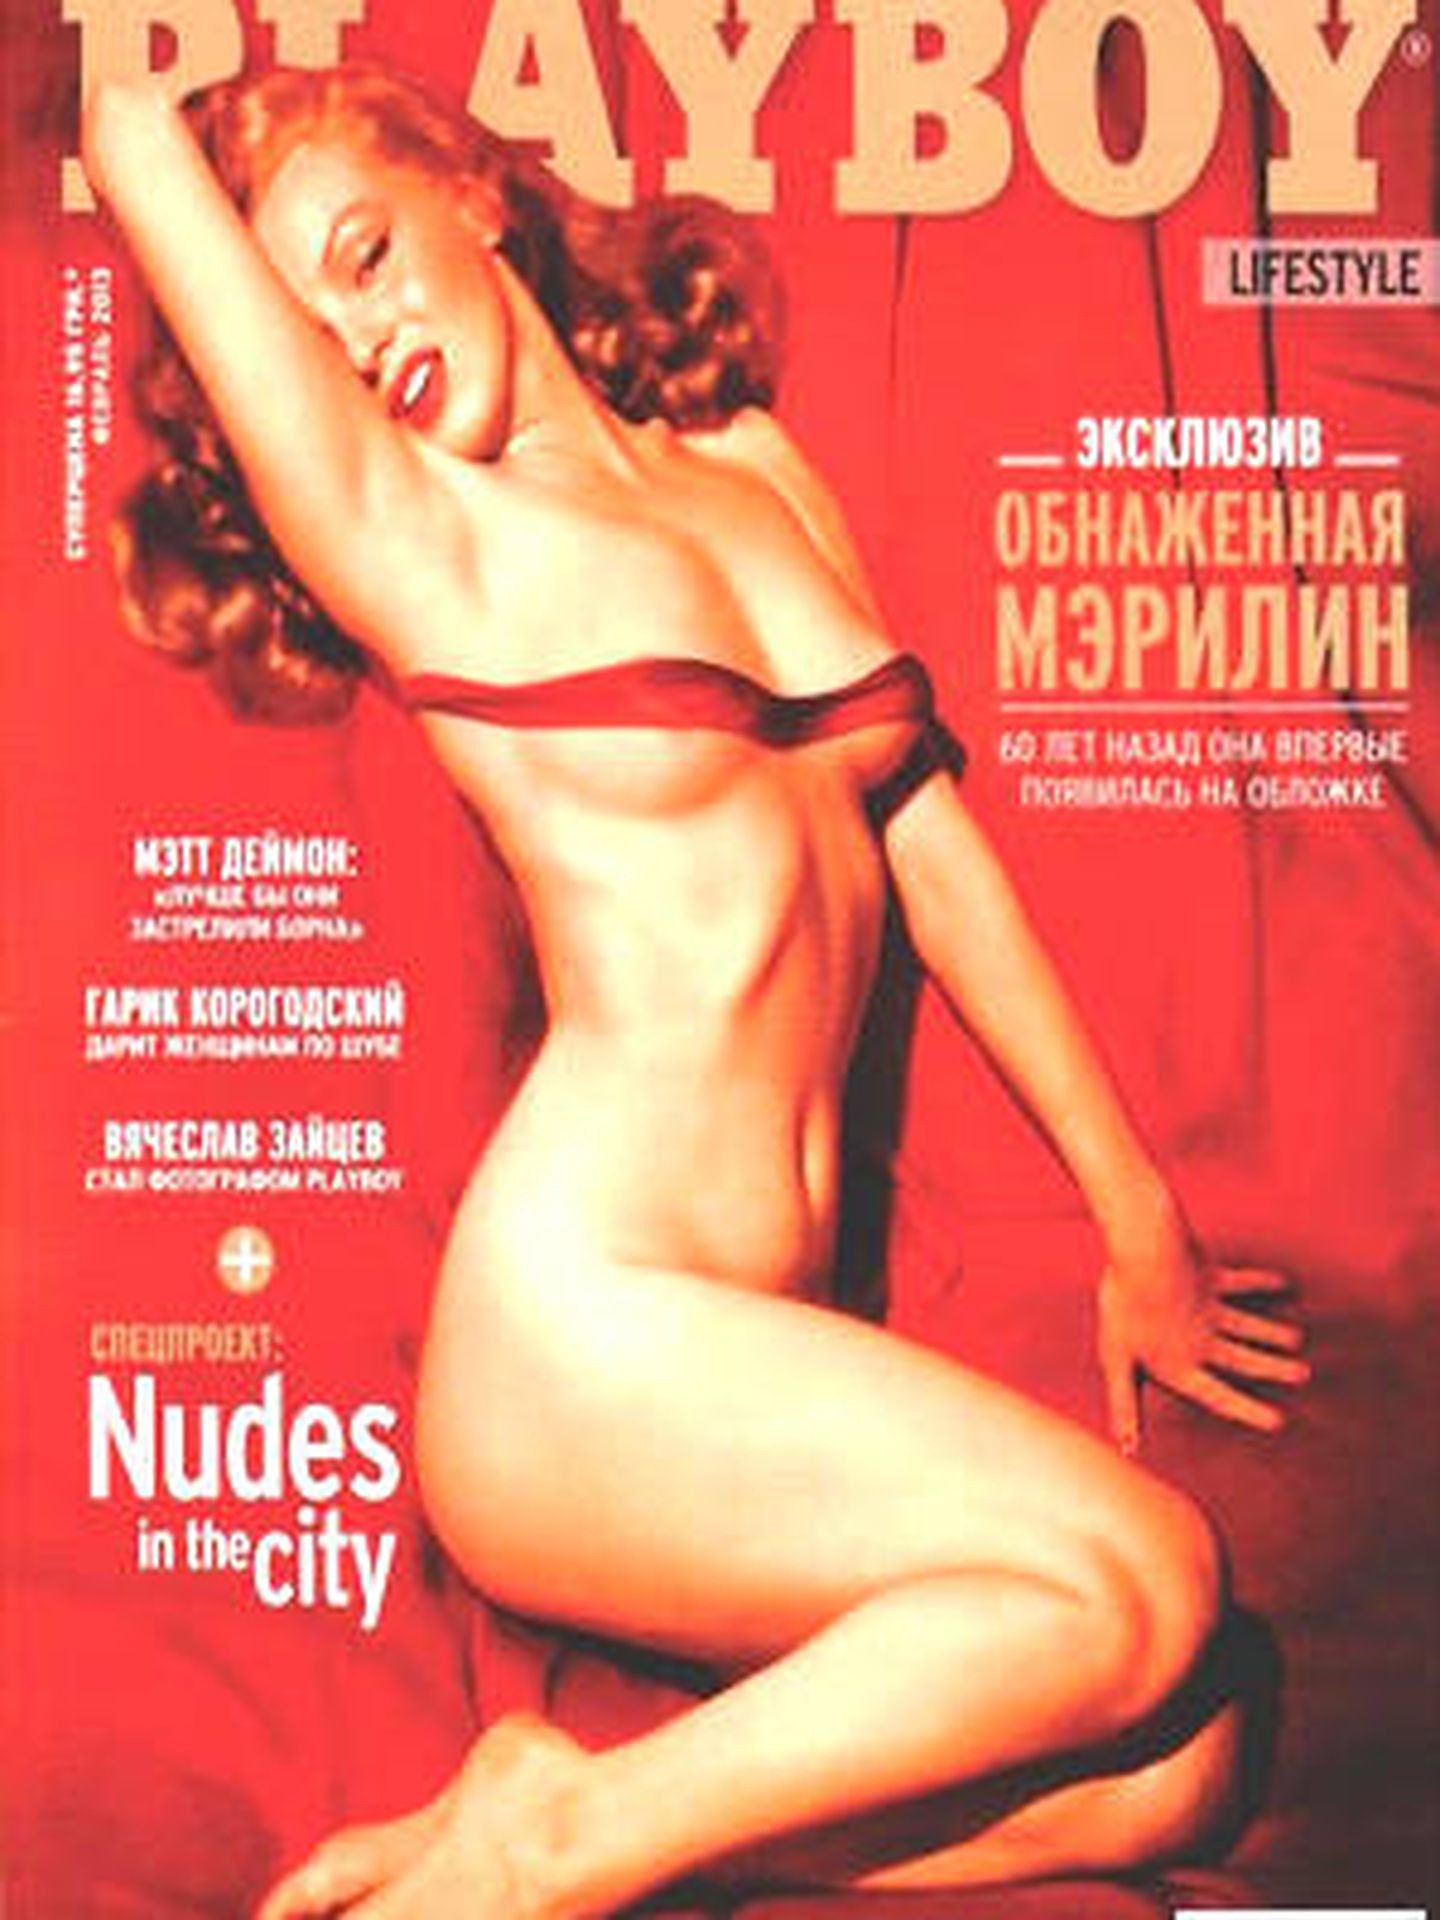 Portada mítica de la revista 'Playboy'.